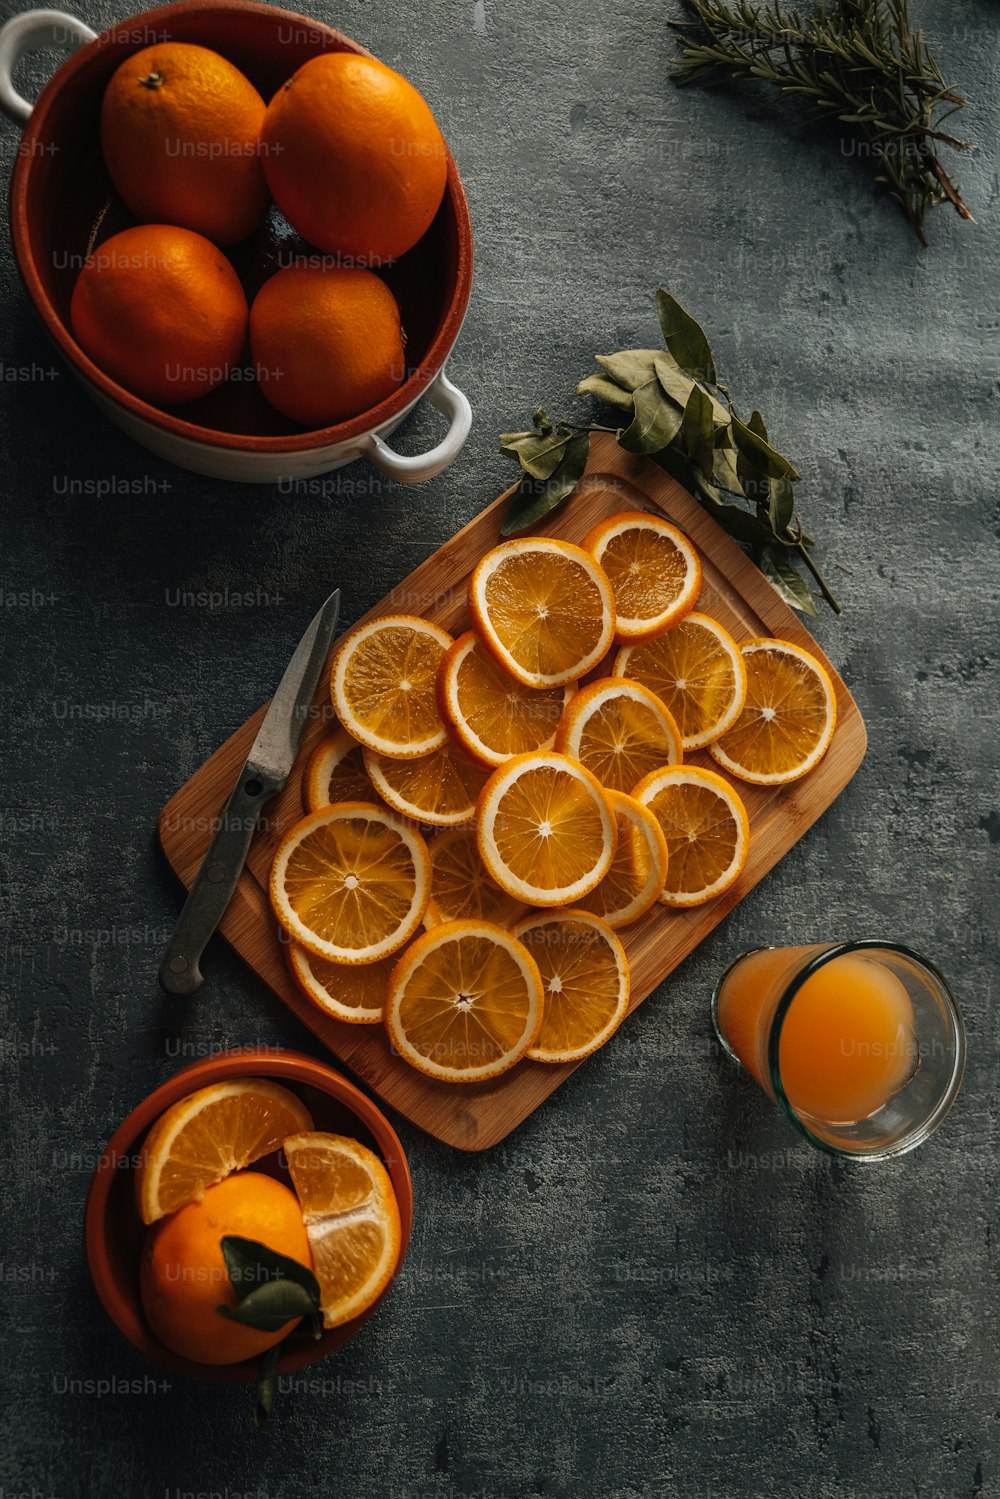 una tabla de cortar cubierta con naranjas en rodajas junto a un tazón de naranjas